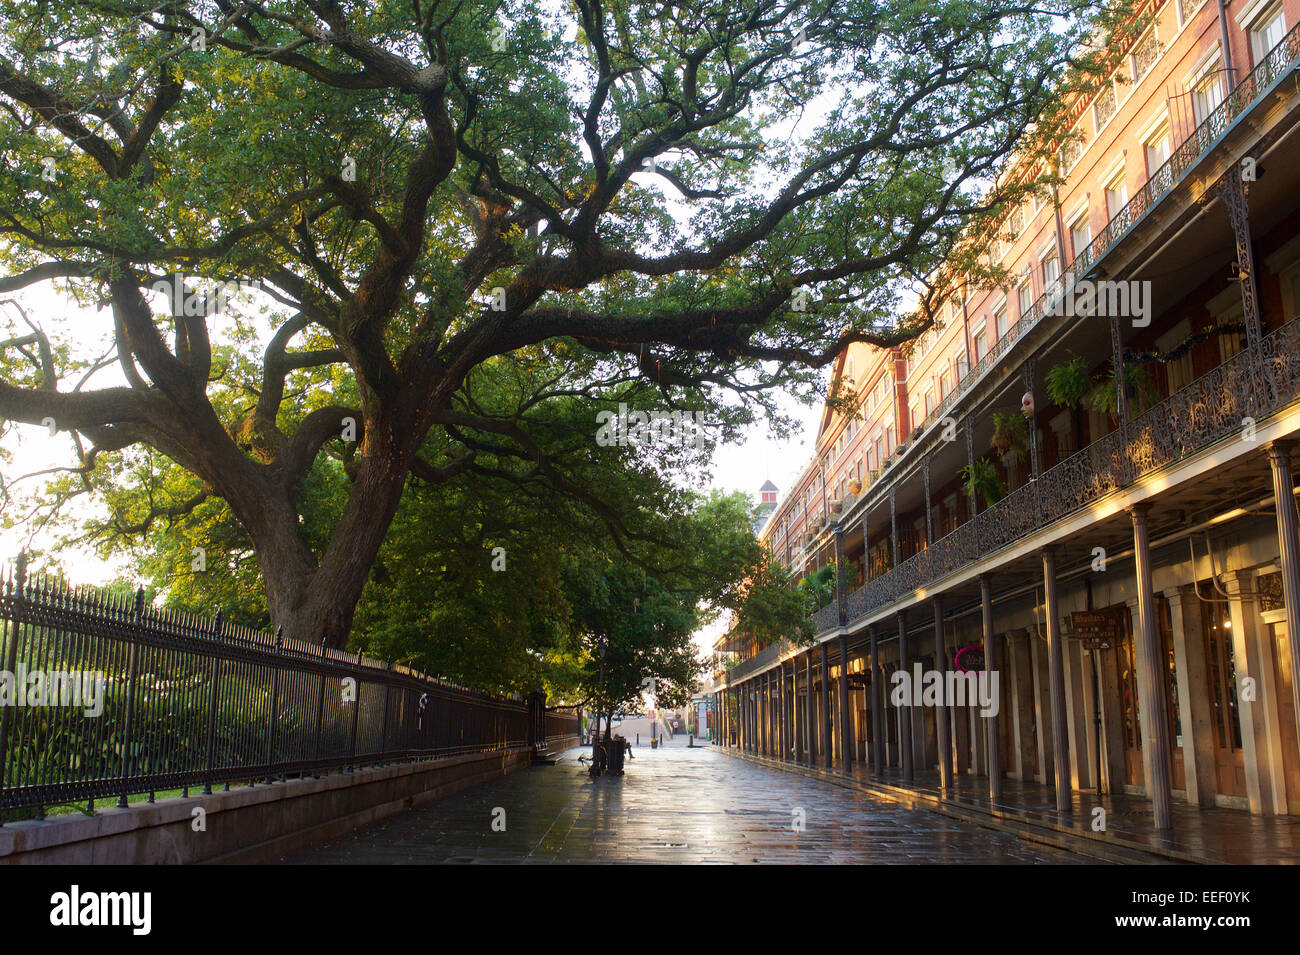 Street scene, New Orleans, Louisiana Stock Photo